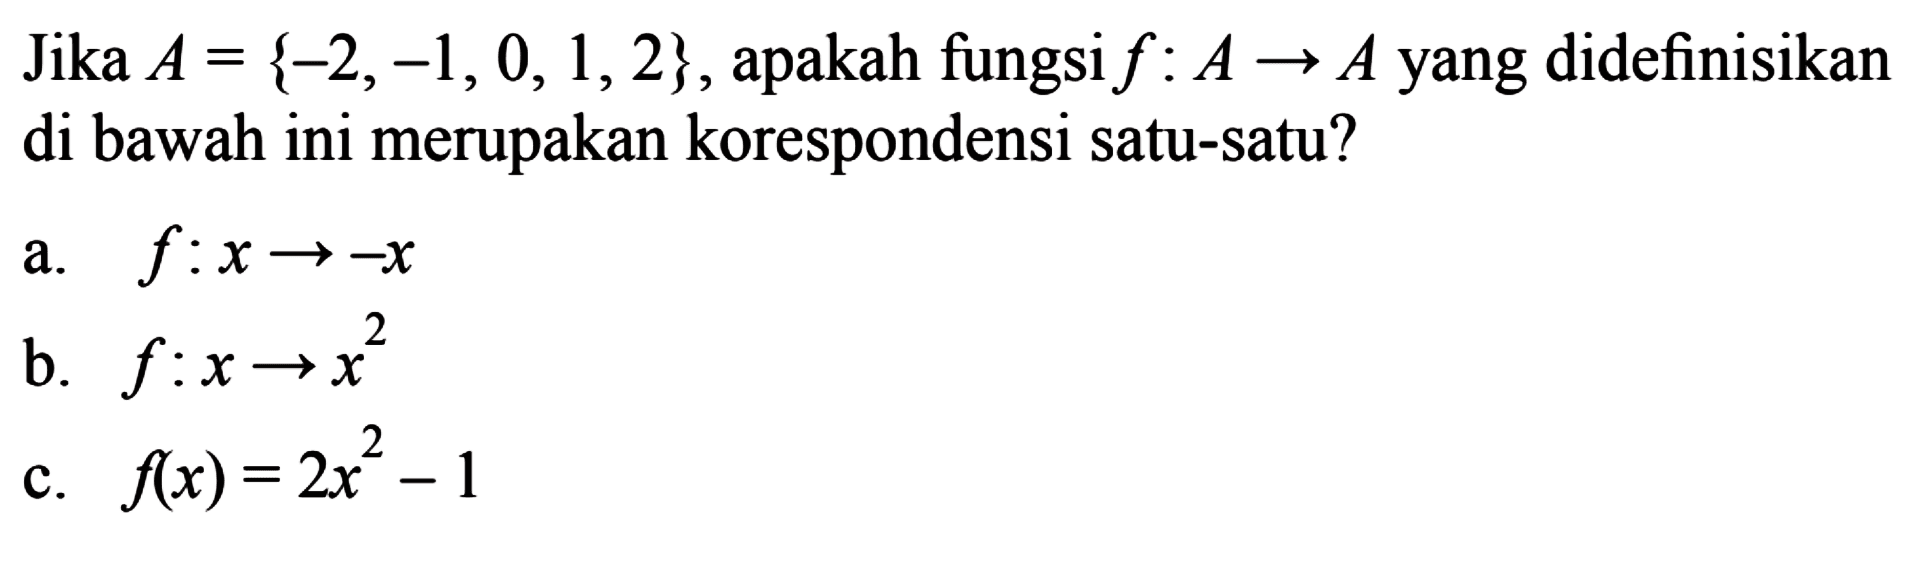 Jika A = {-2,-1, 0, 1,2} , apakah fungsi f : A -> A yang didefinisikan di bawah ini merupakan korespondensi satu-satu? a. f : x -> -x b. f : x -> x^2 c. f(x) = 2x^2 - 1